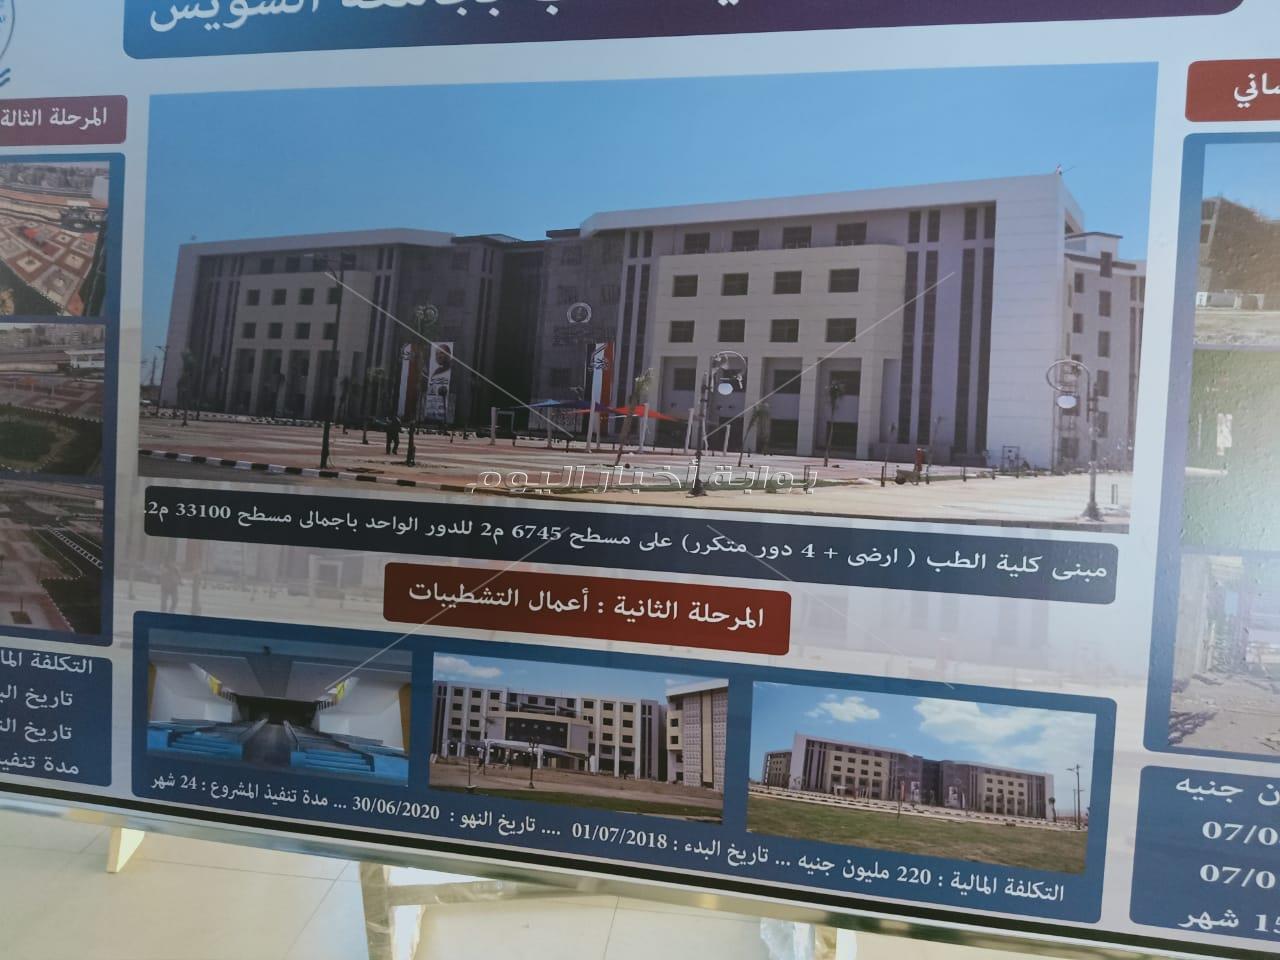 وزير التعليم العالي: جامعة السويس ستصبح من أحدث الجامعات في مصر المنطقة